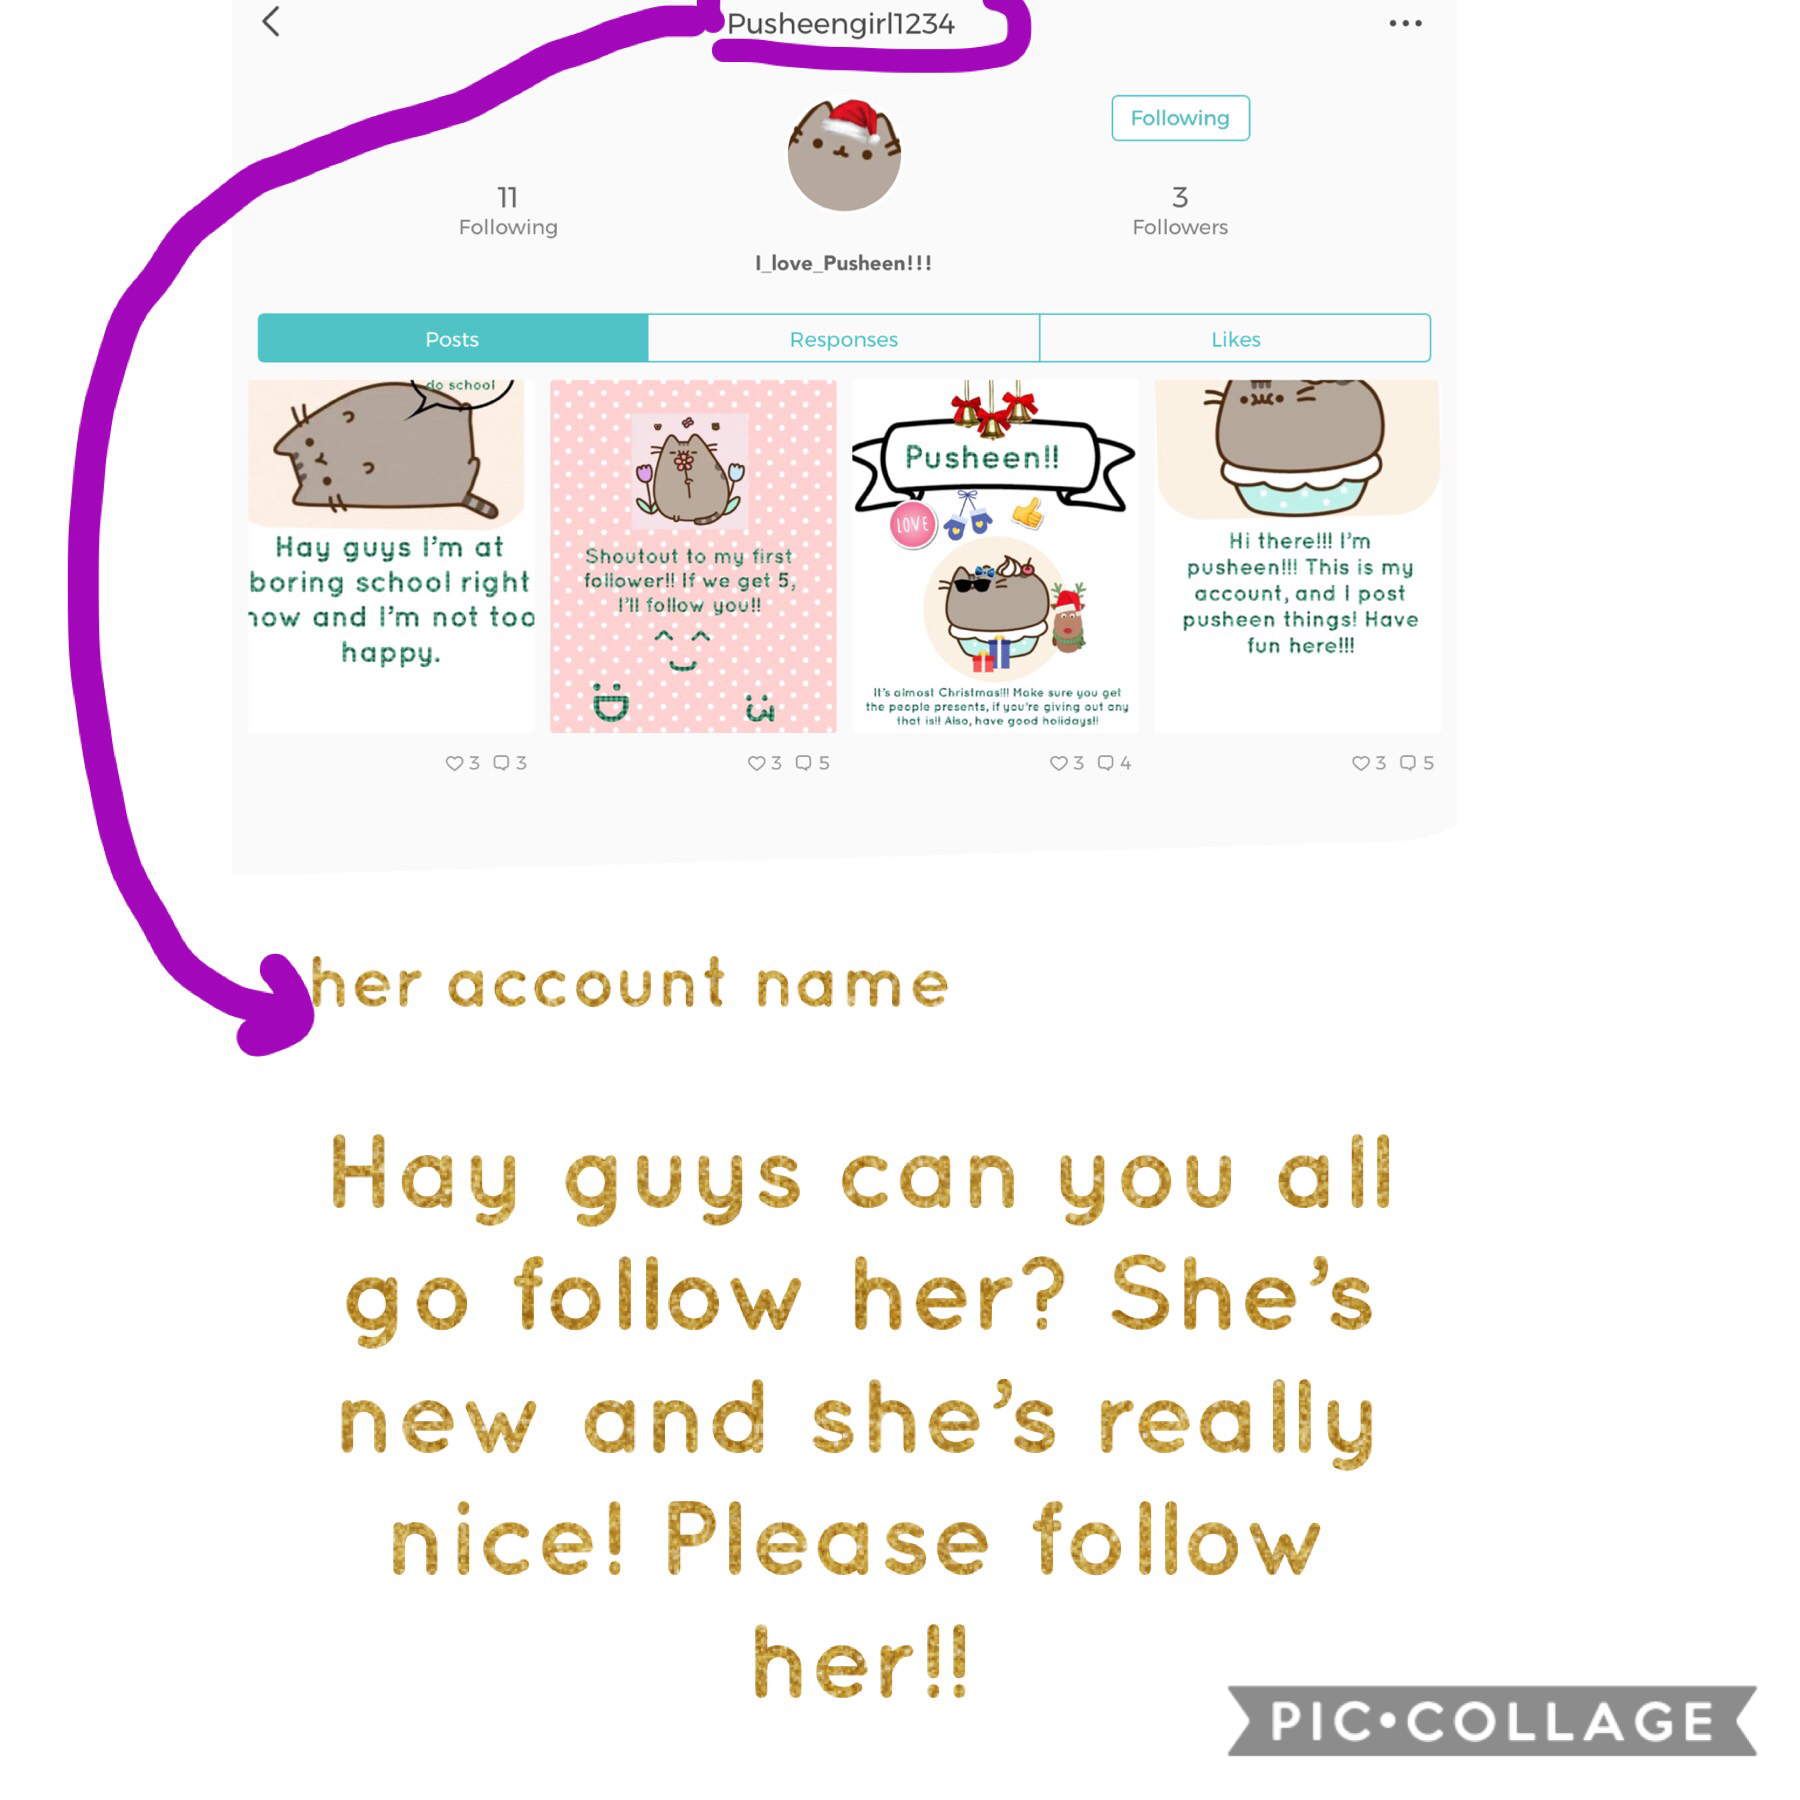 Go follow her!!